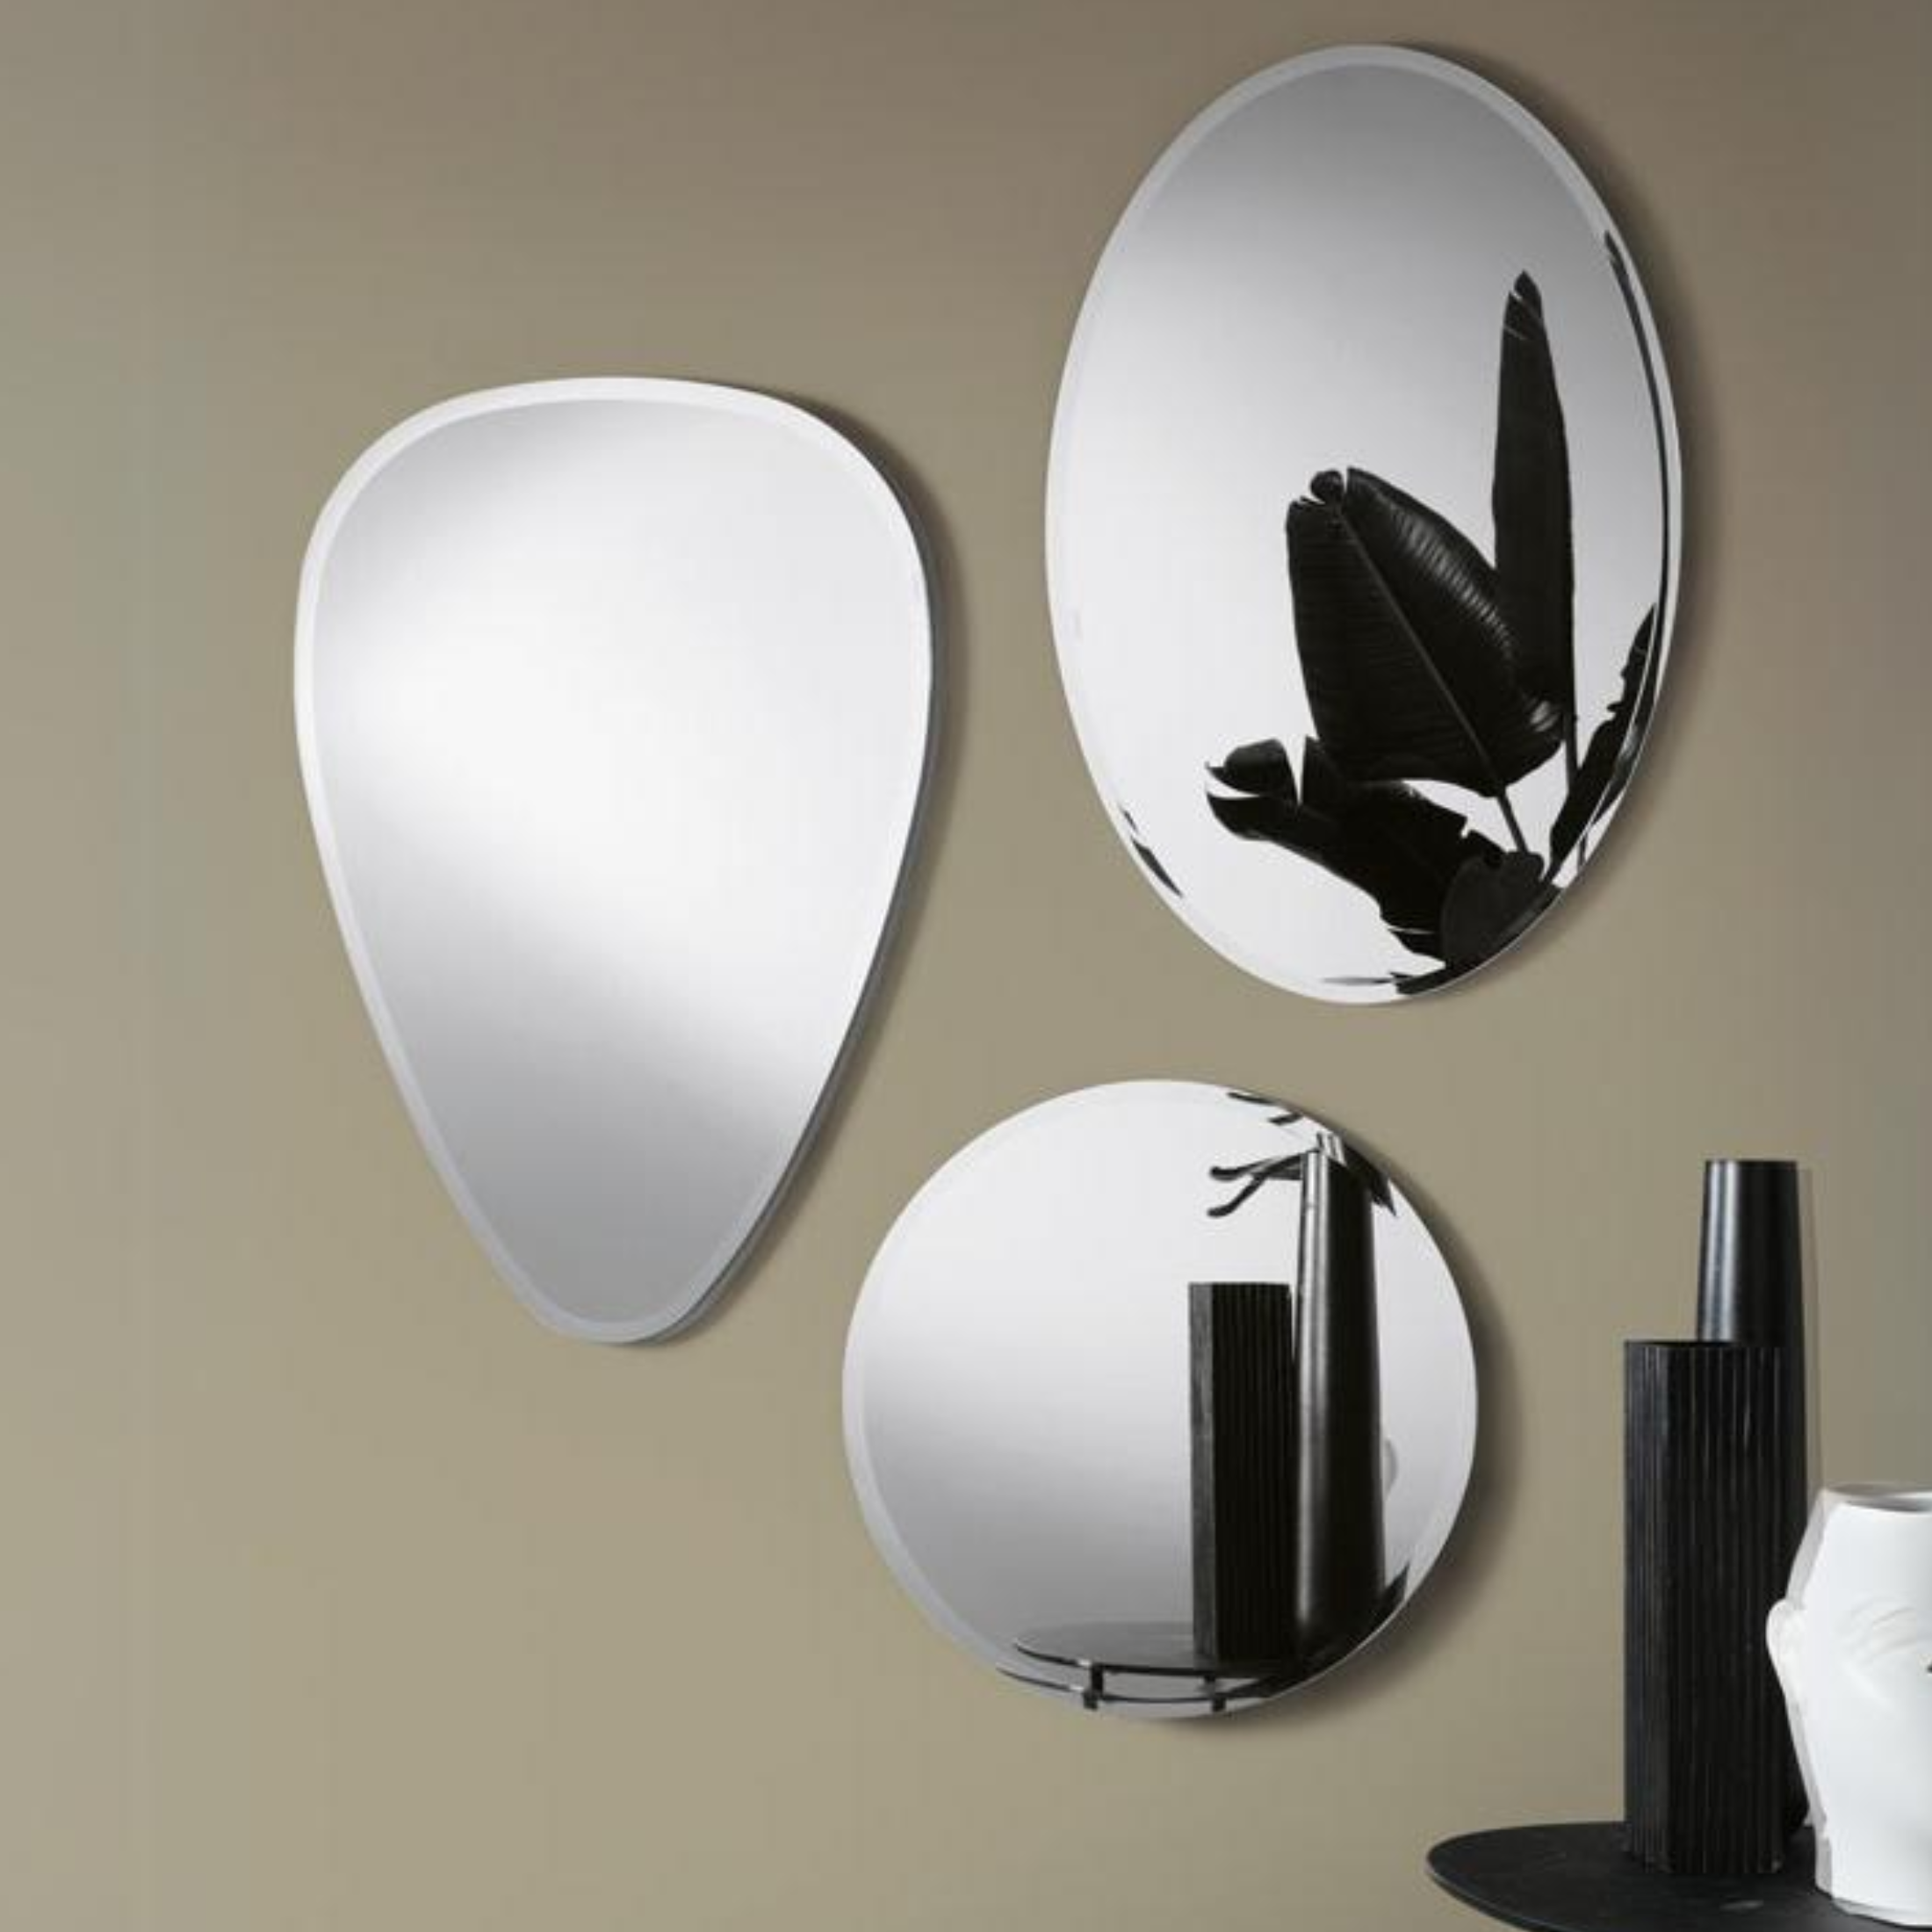 Specchio da parete "Nora" moderno senza cornice